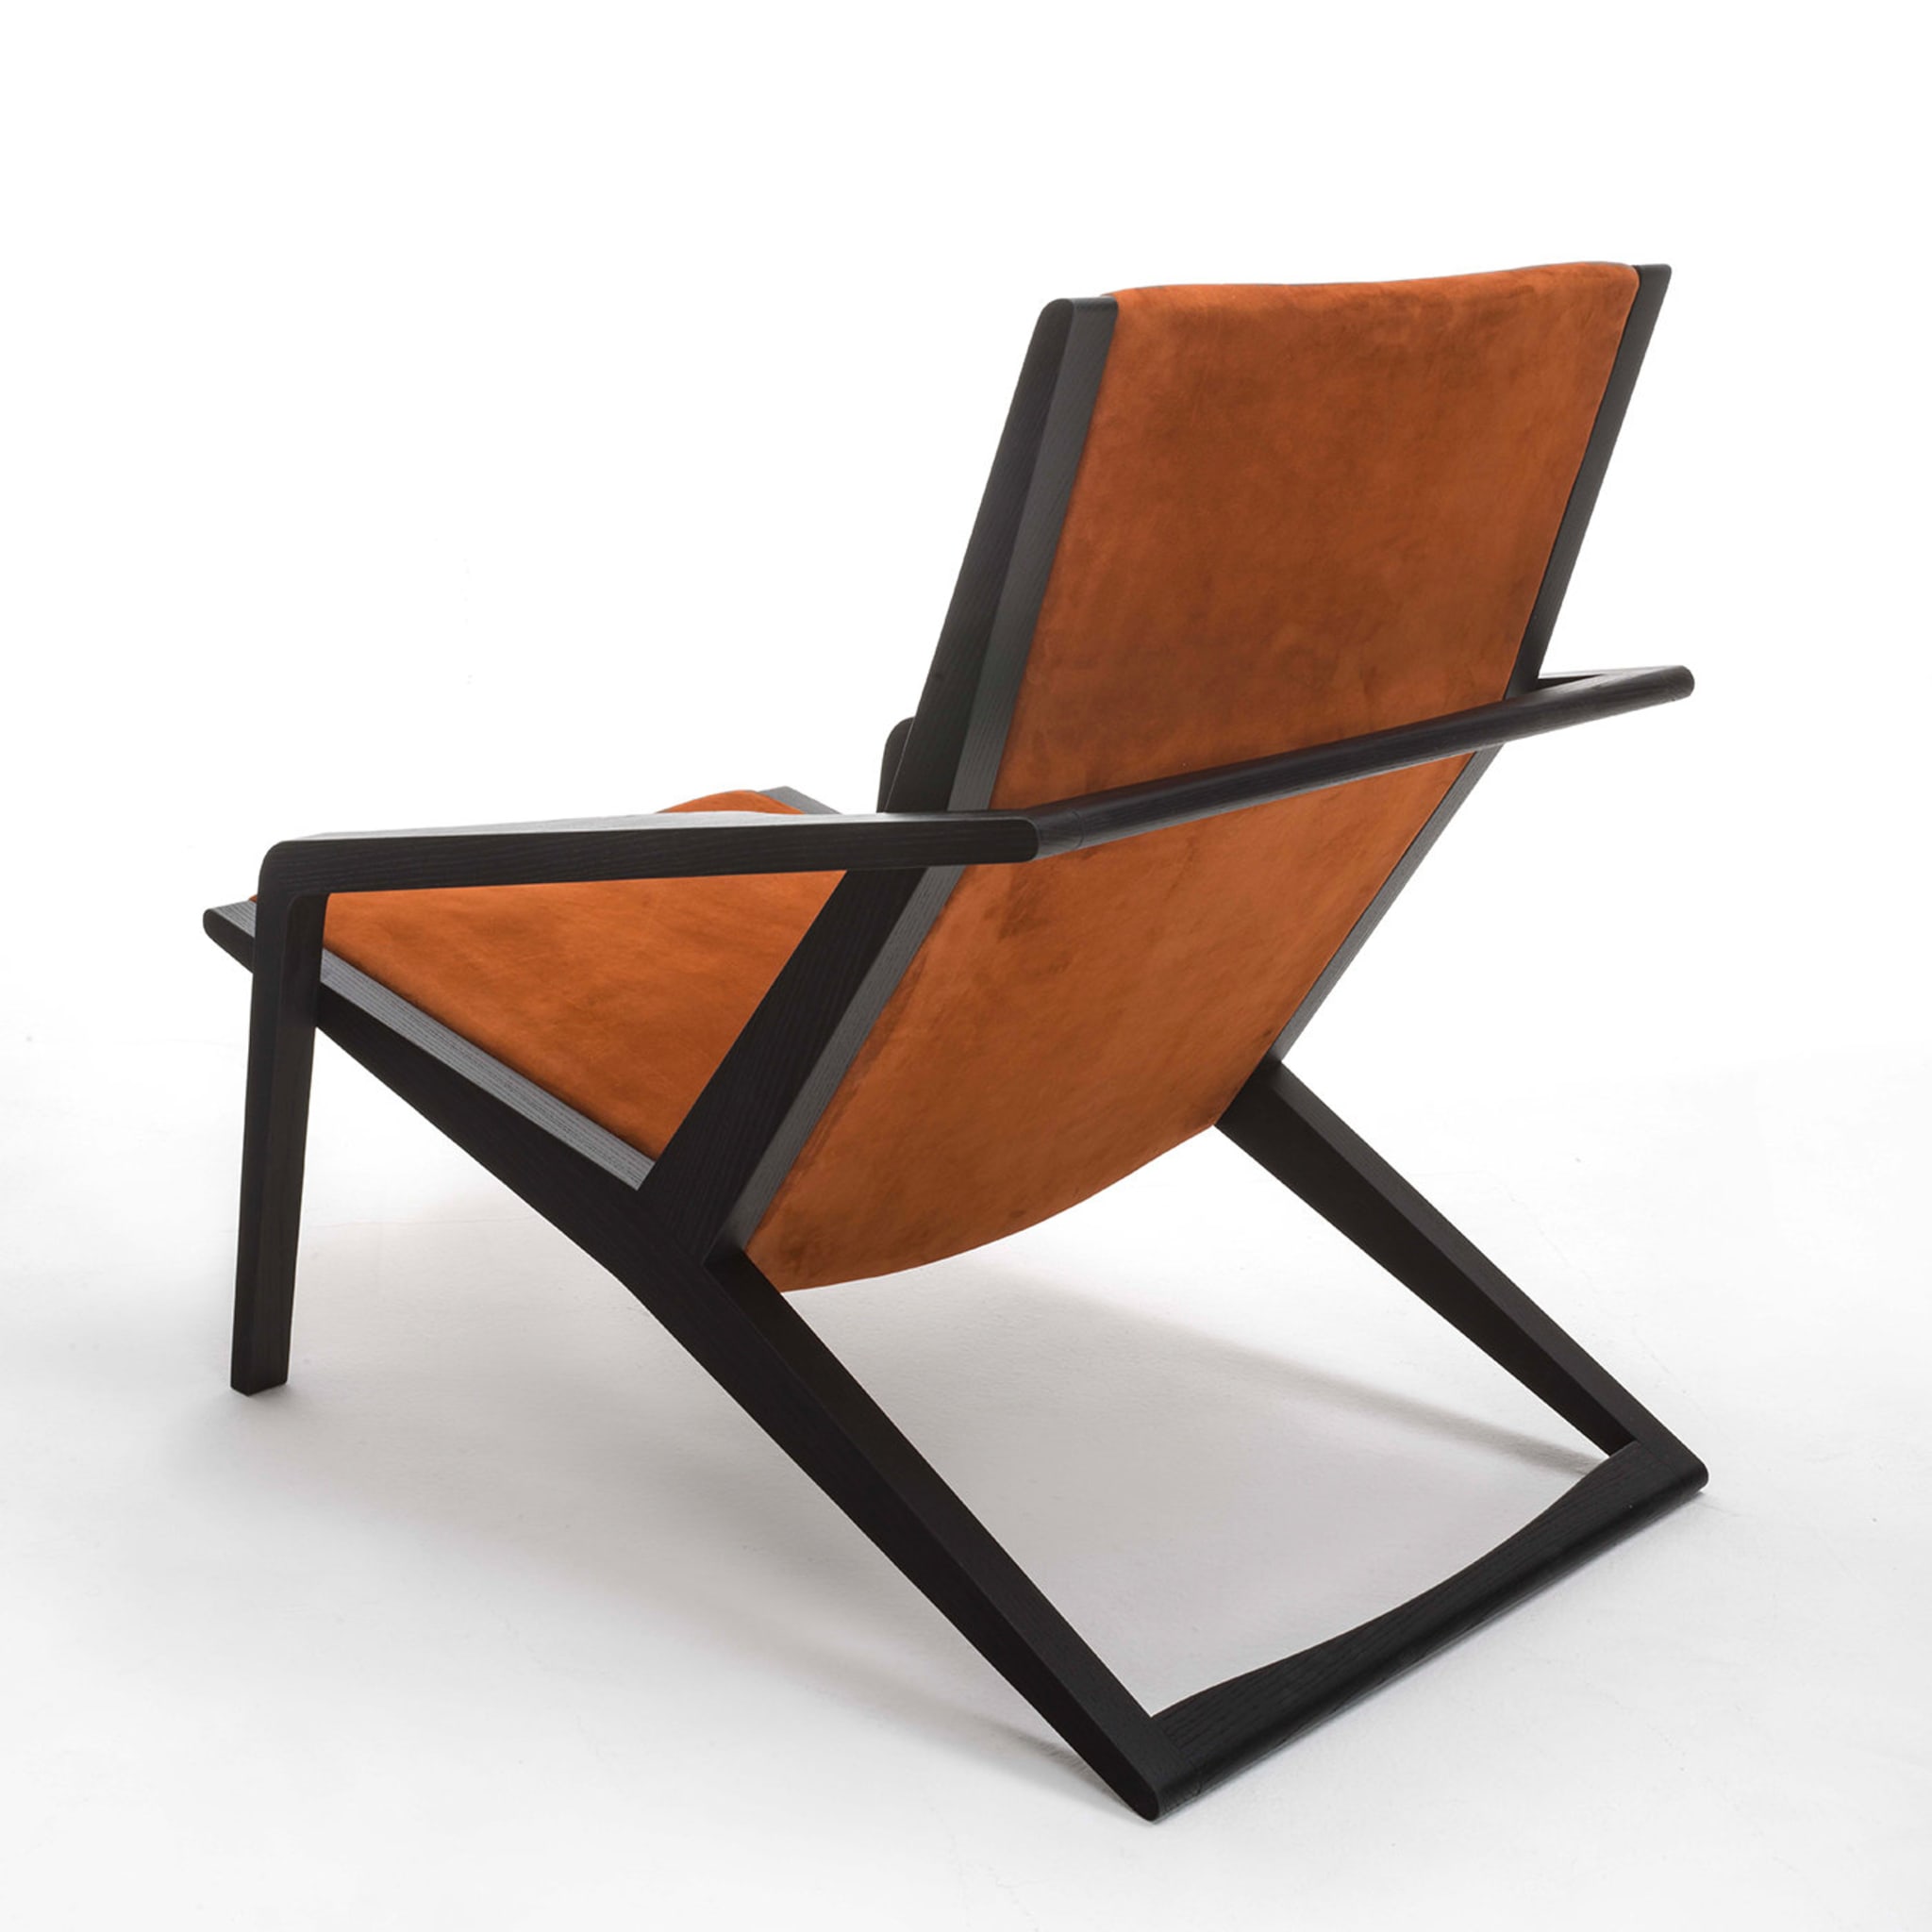 Gazzella orange armchair - Alternative view 1